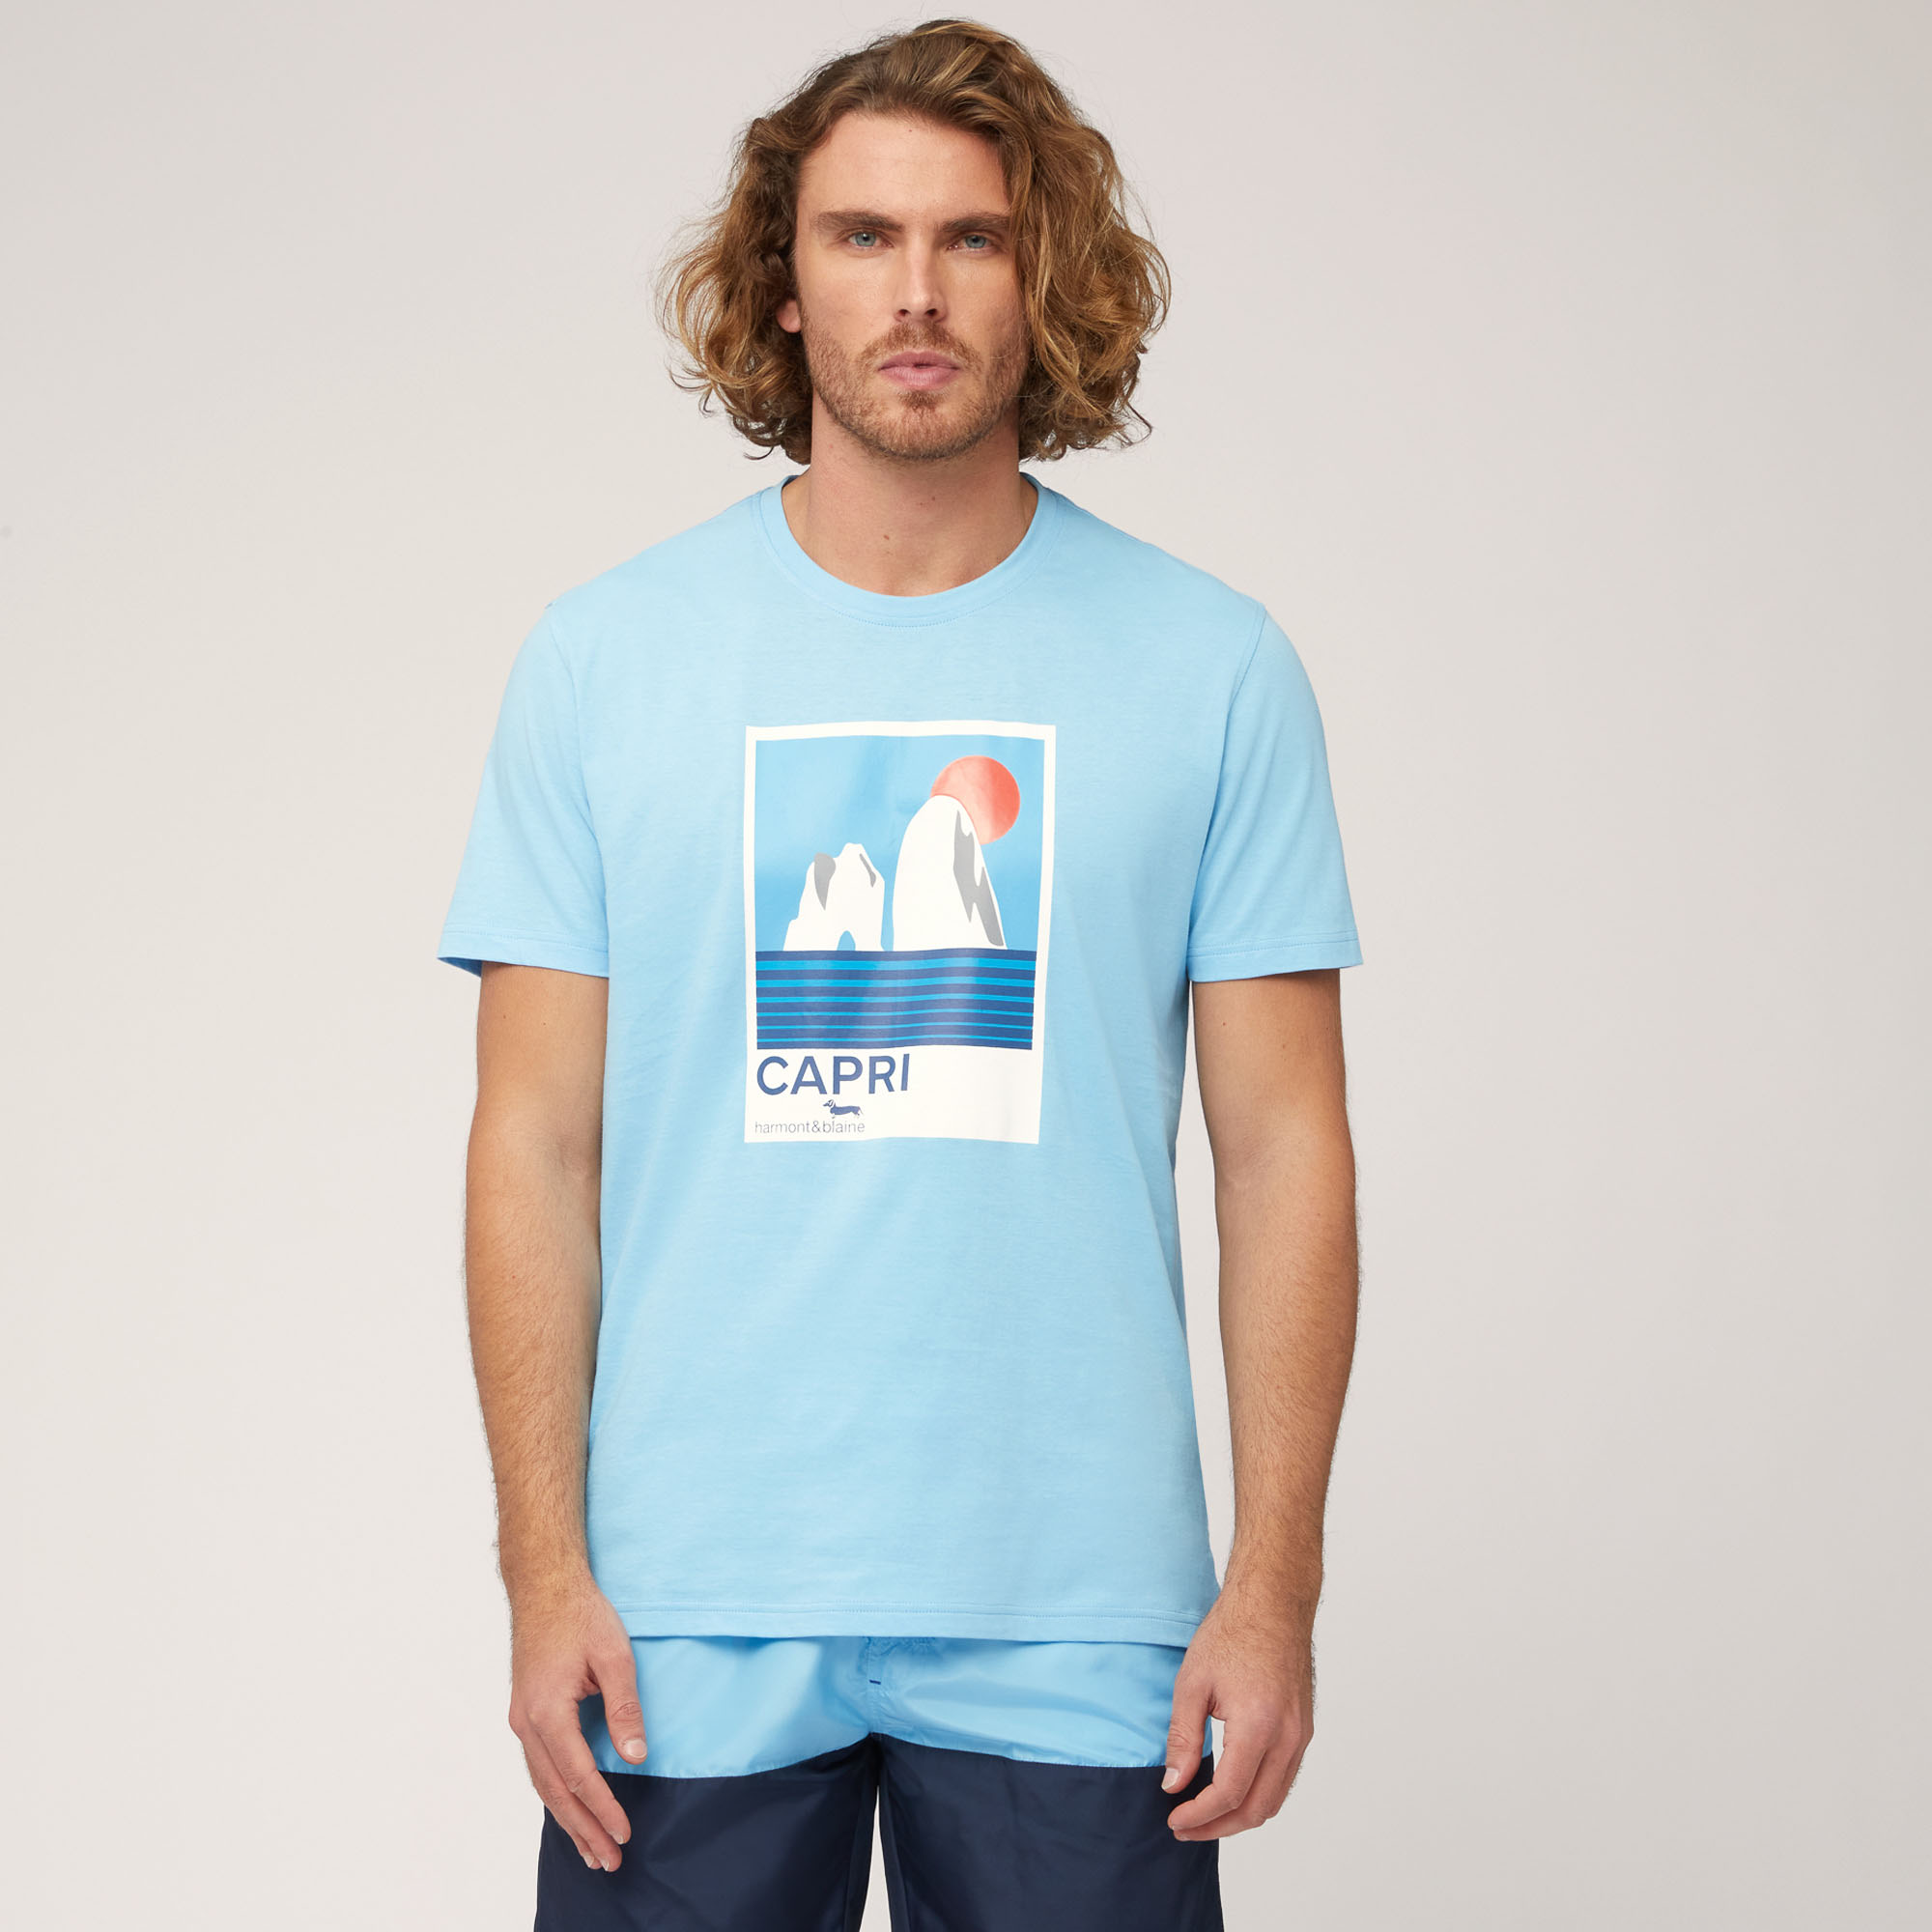 T-Shirt Costiera Amalfitana, Azzurro, large